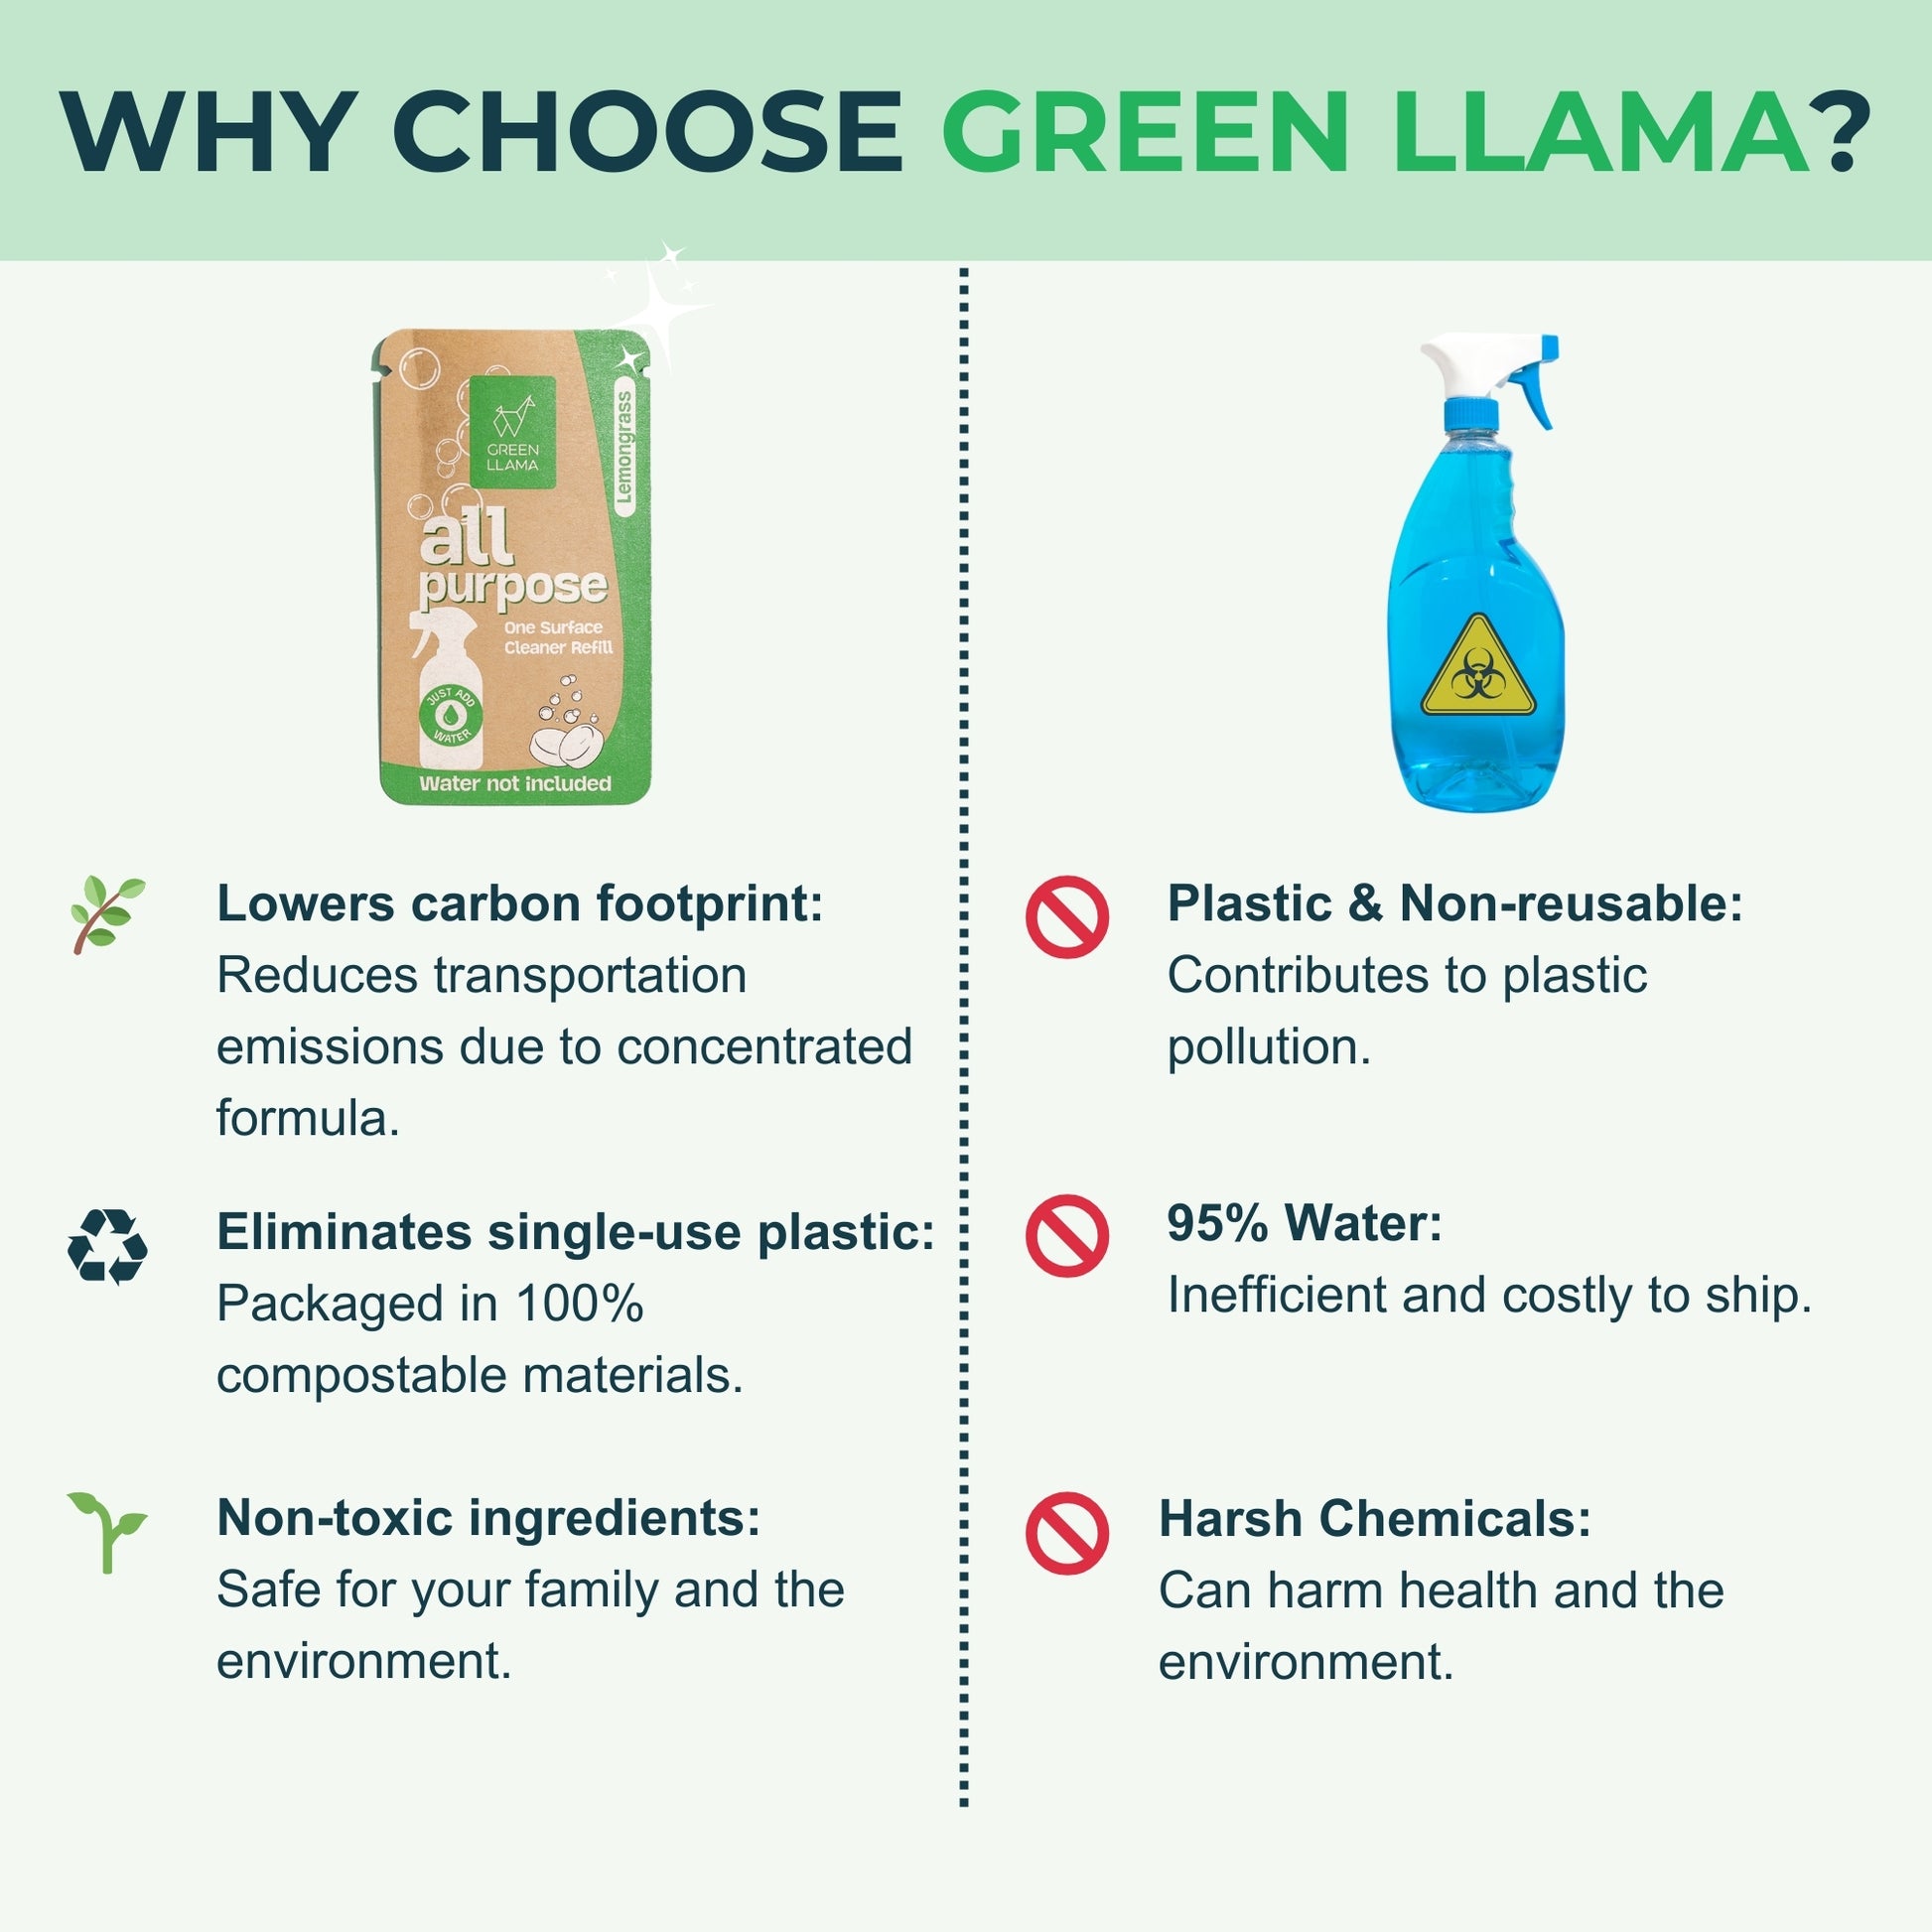 Green Llama vs Competitors